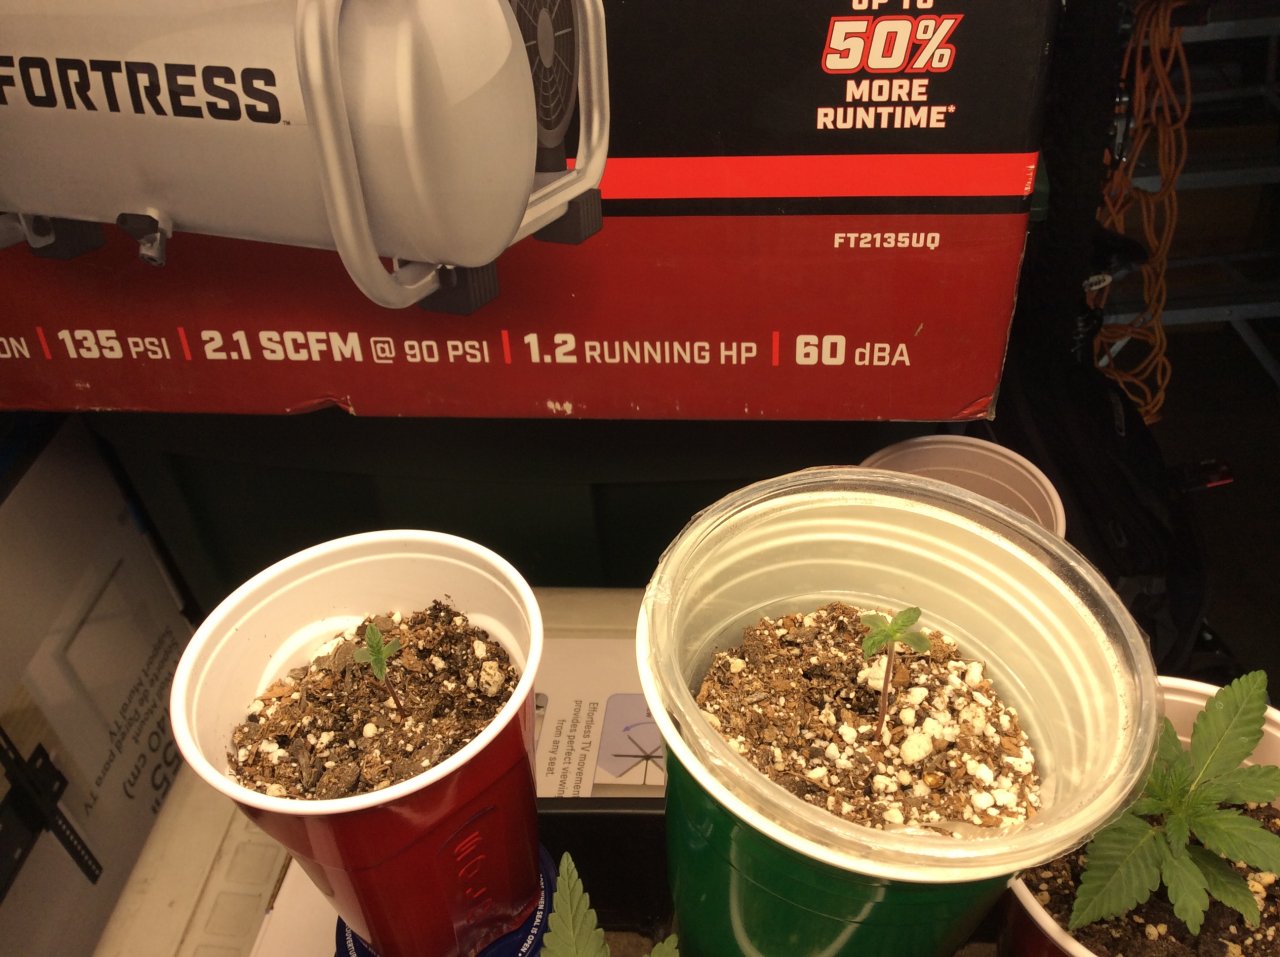 2 mystery seedlings